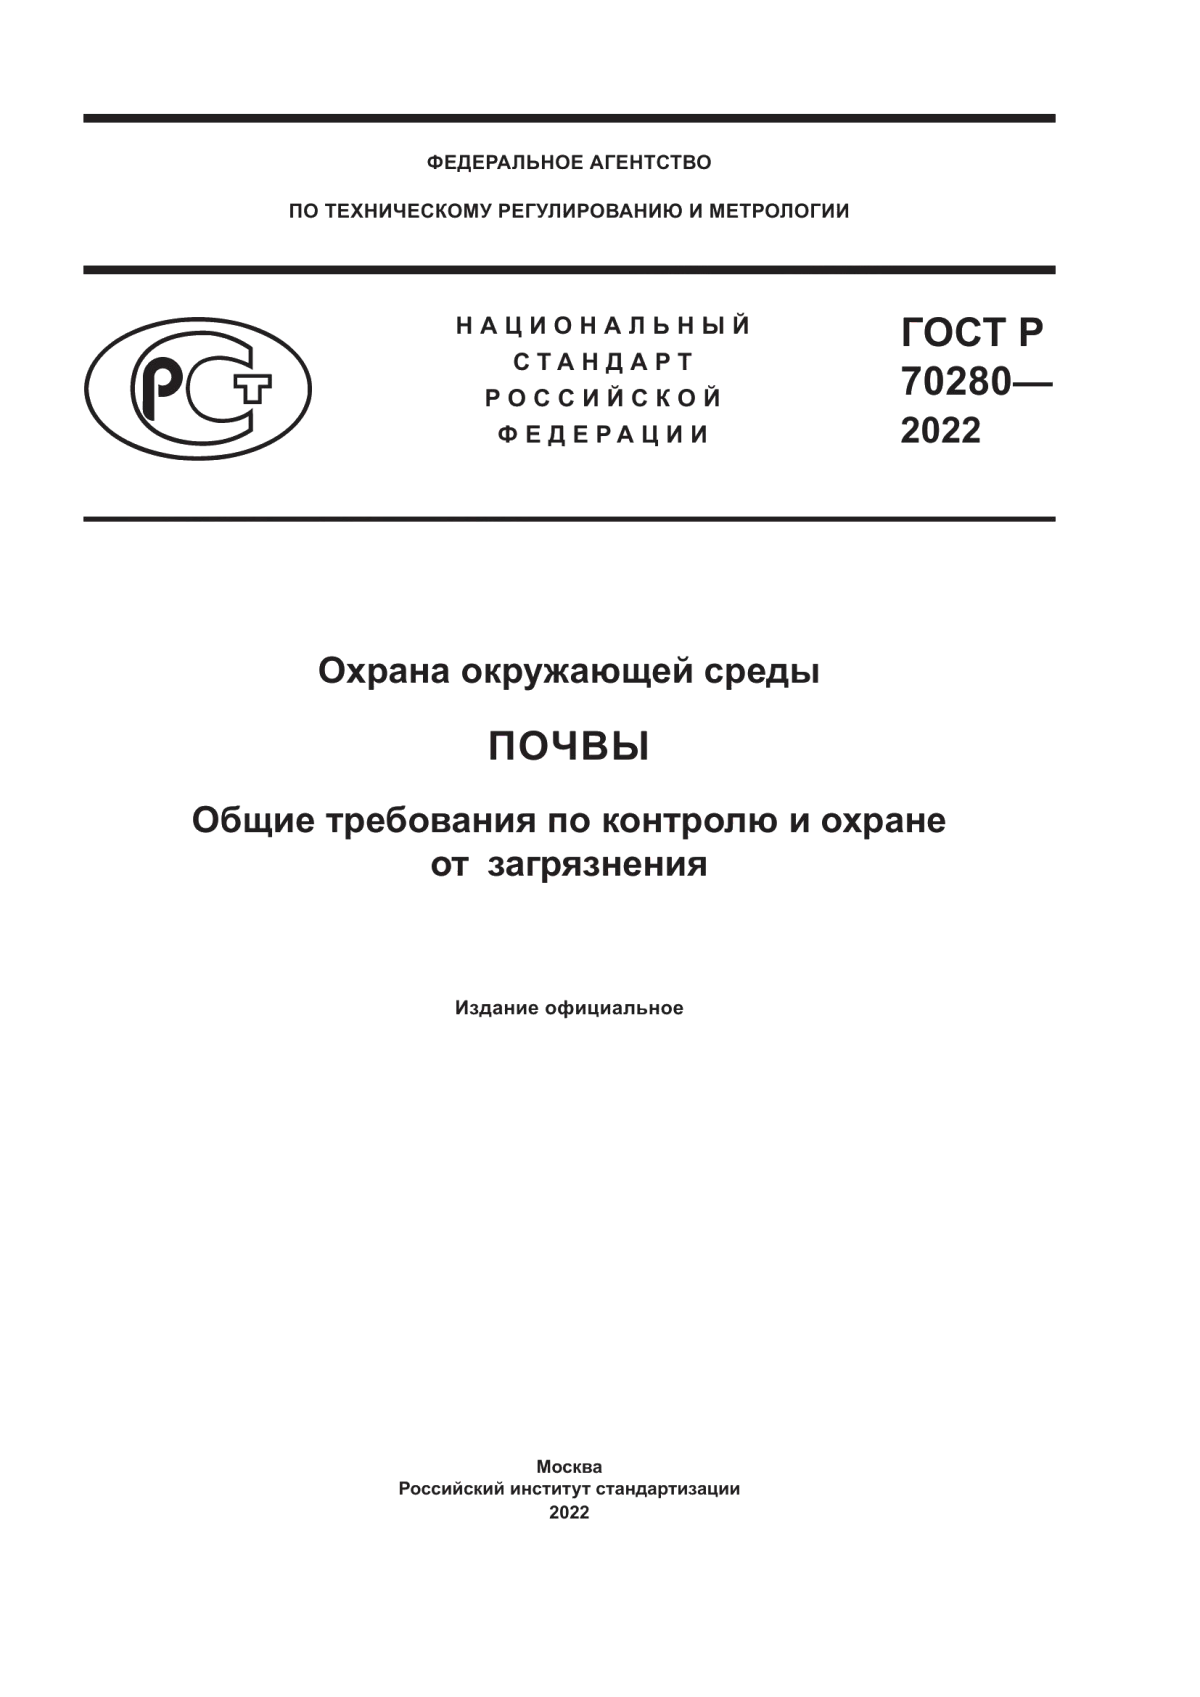 ГОСТ Р 70280-2022 Охрана окружающей среды. Почвы. Общие требования по контролю и охране от загрязнения